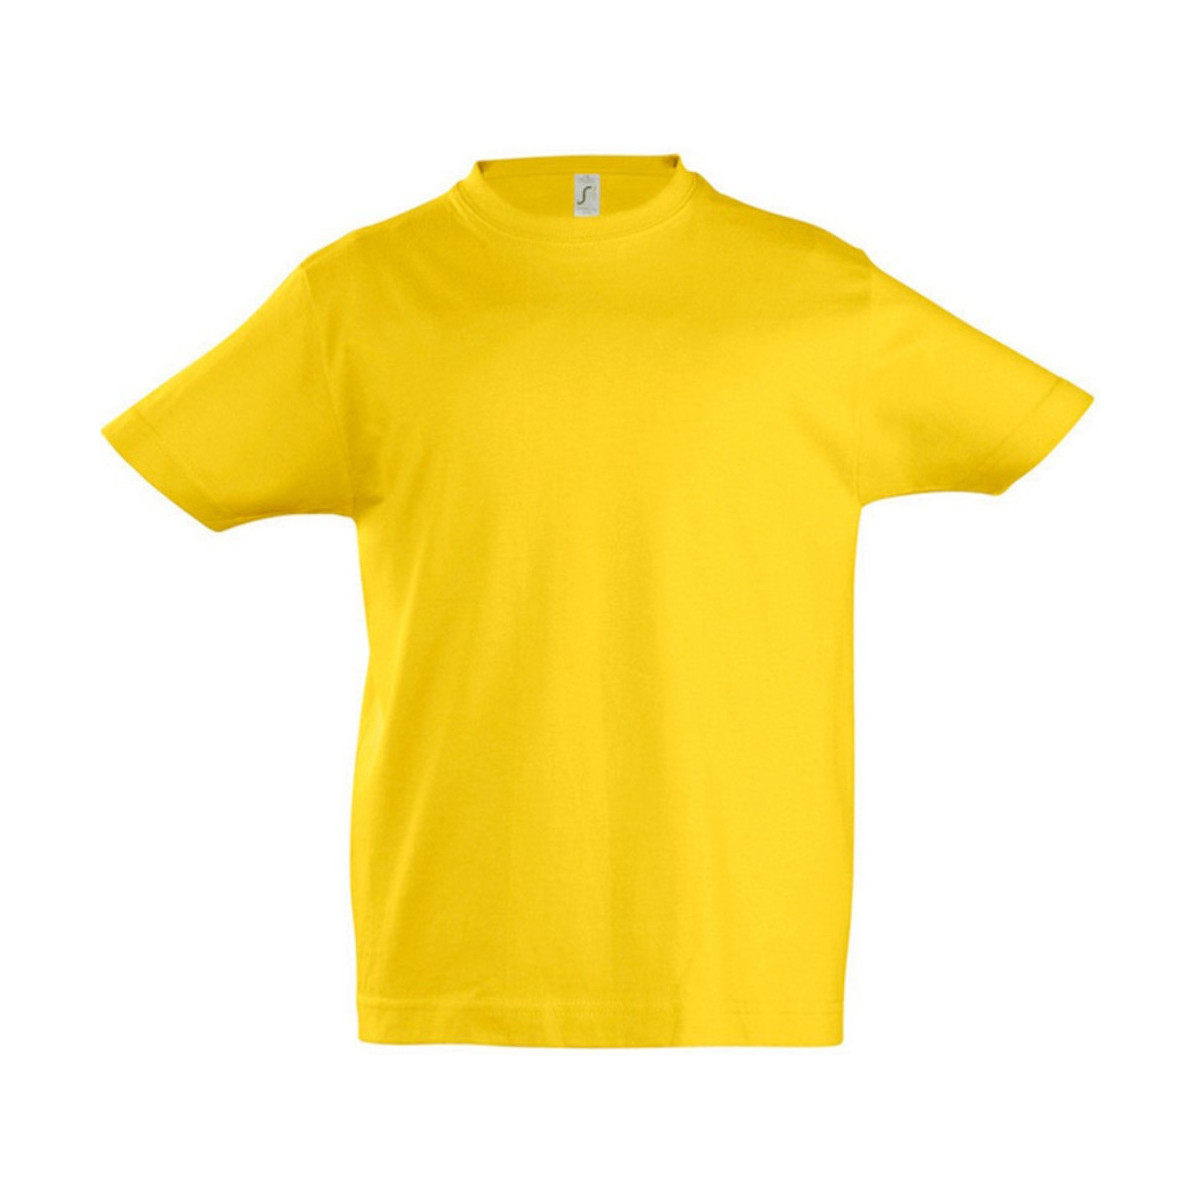 Vêtements Enfant Calvin Klein Jeans T-shirt met logo op de voor en achterkant in wit 11770 Multicolore